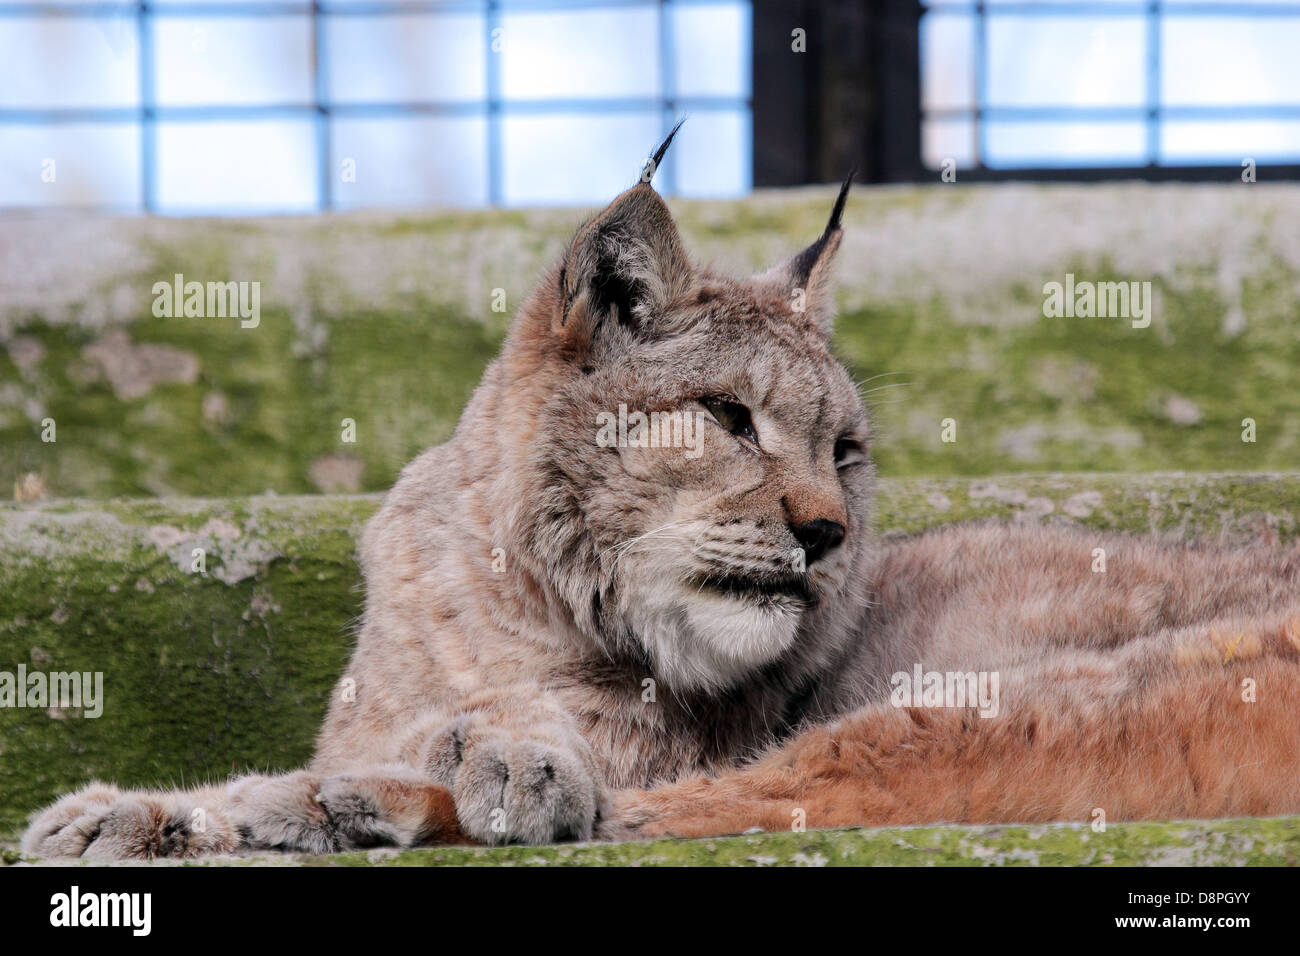 Retrato de un europeo (Lynx lynx) descansando en la jaula de un zoológico Foto de stock